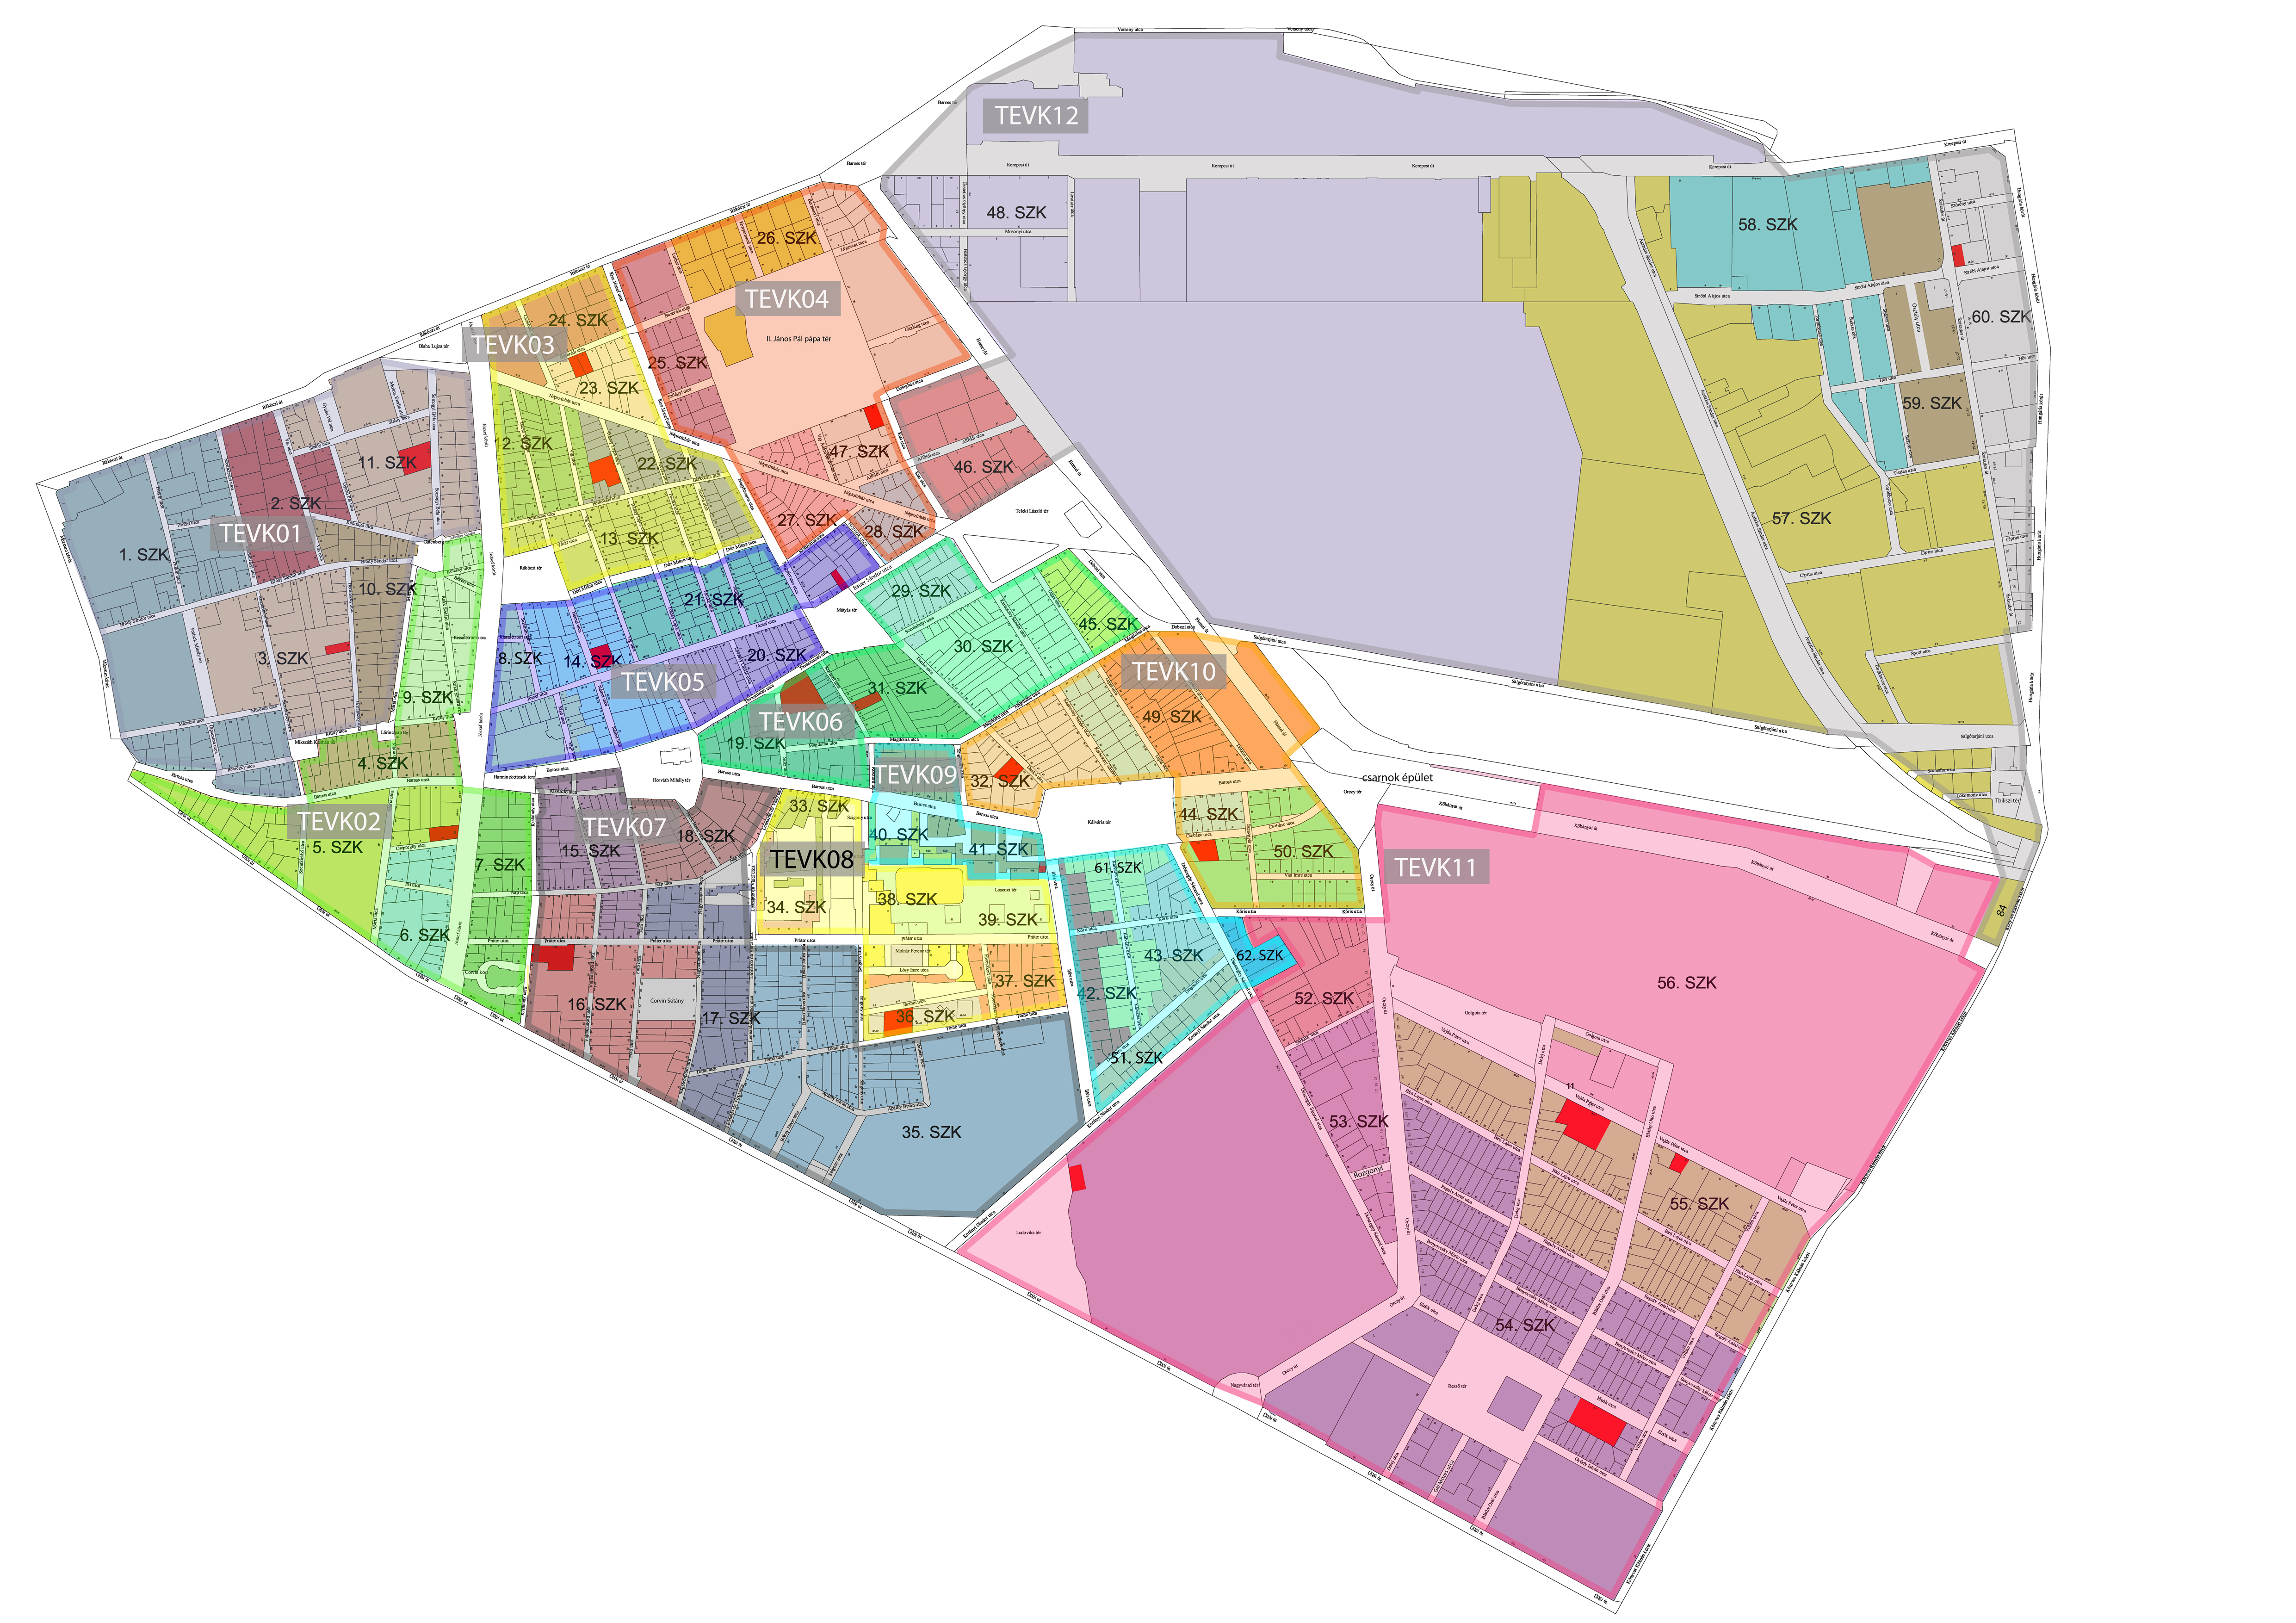 budapest térkép 8 ker Önkormányzat   jozsefvaros.hu budapest térkép 8 ker